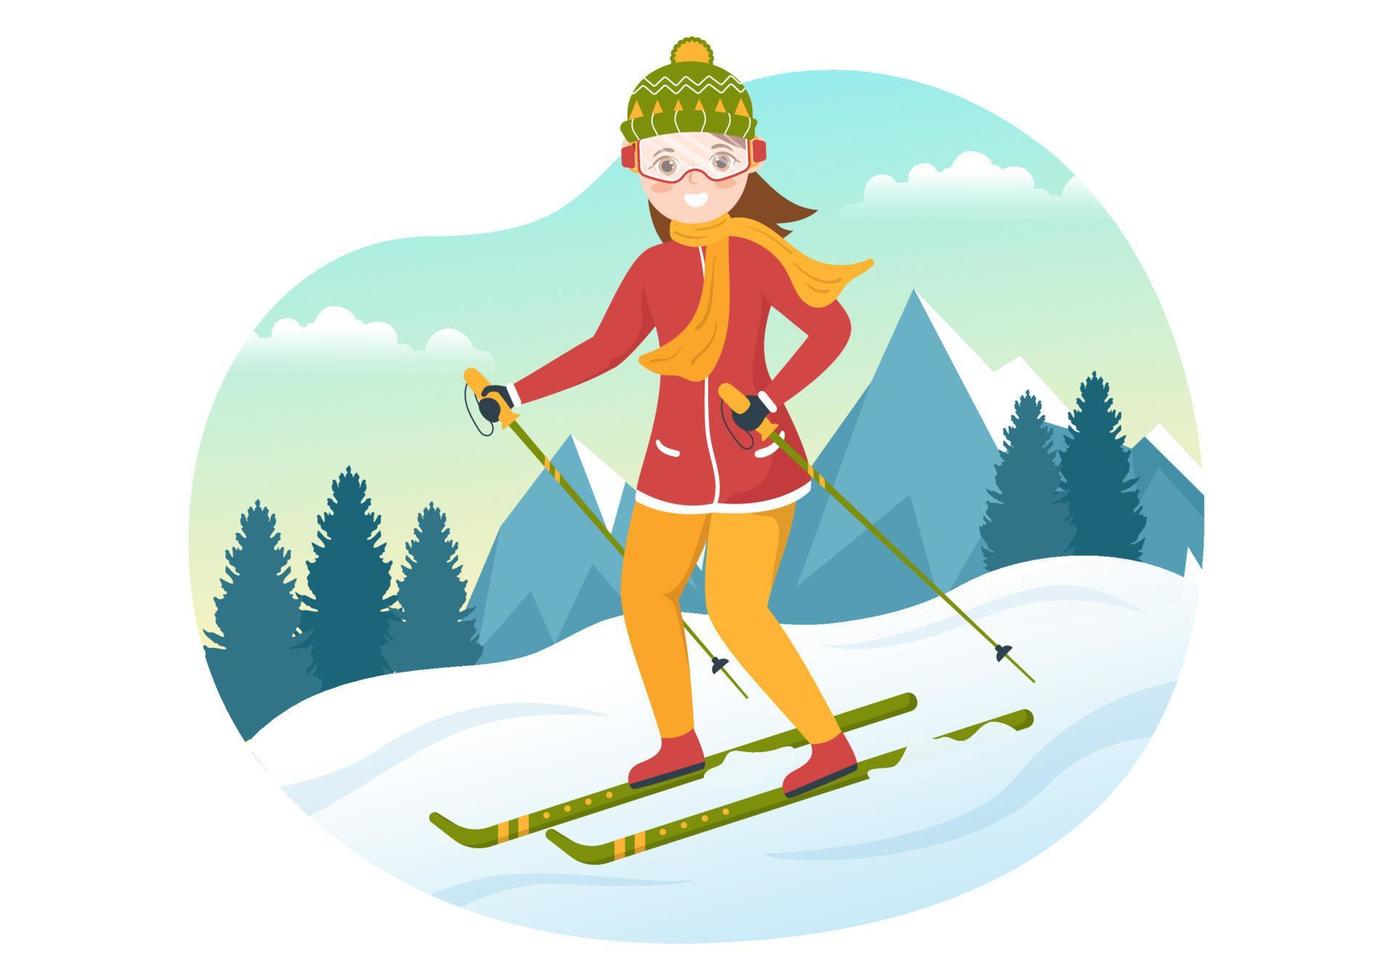 ilustração de esqui com esquiadores deslizando perto da montanha descendo na estância de esqui em atividades planas de esportes de inverno modelos desenhados à mão vetor